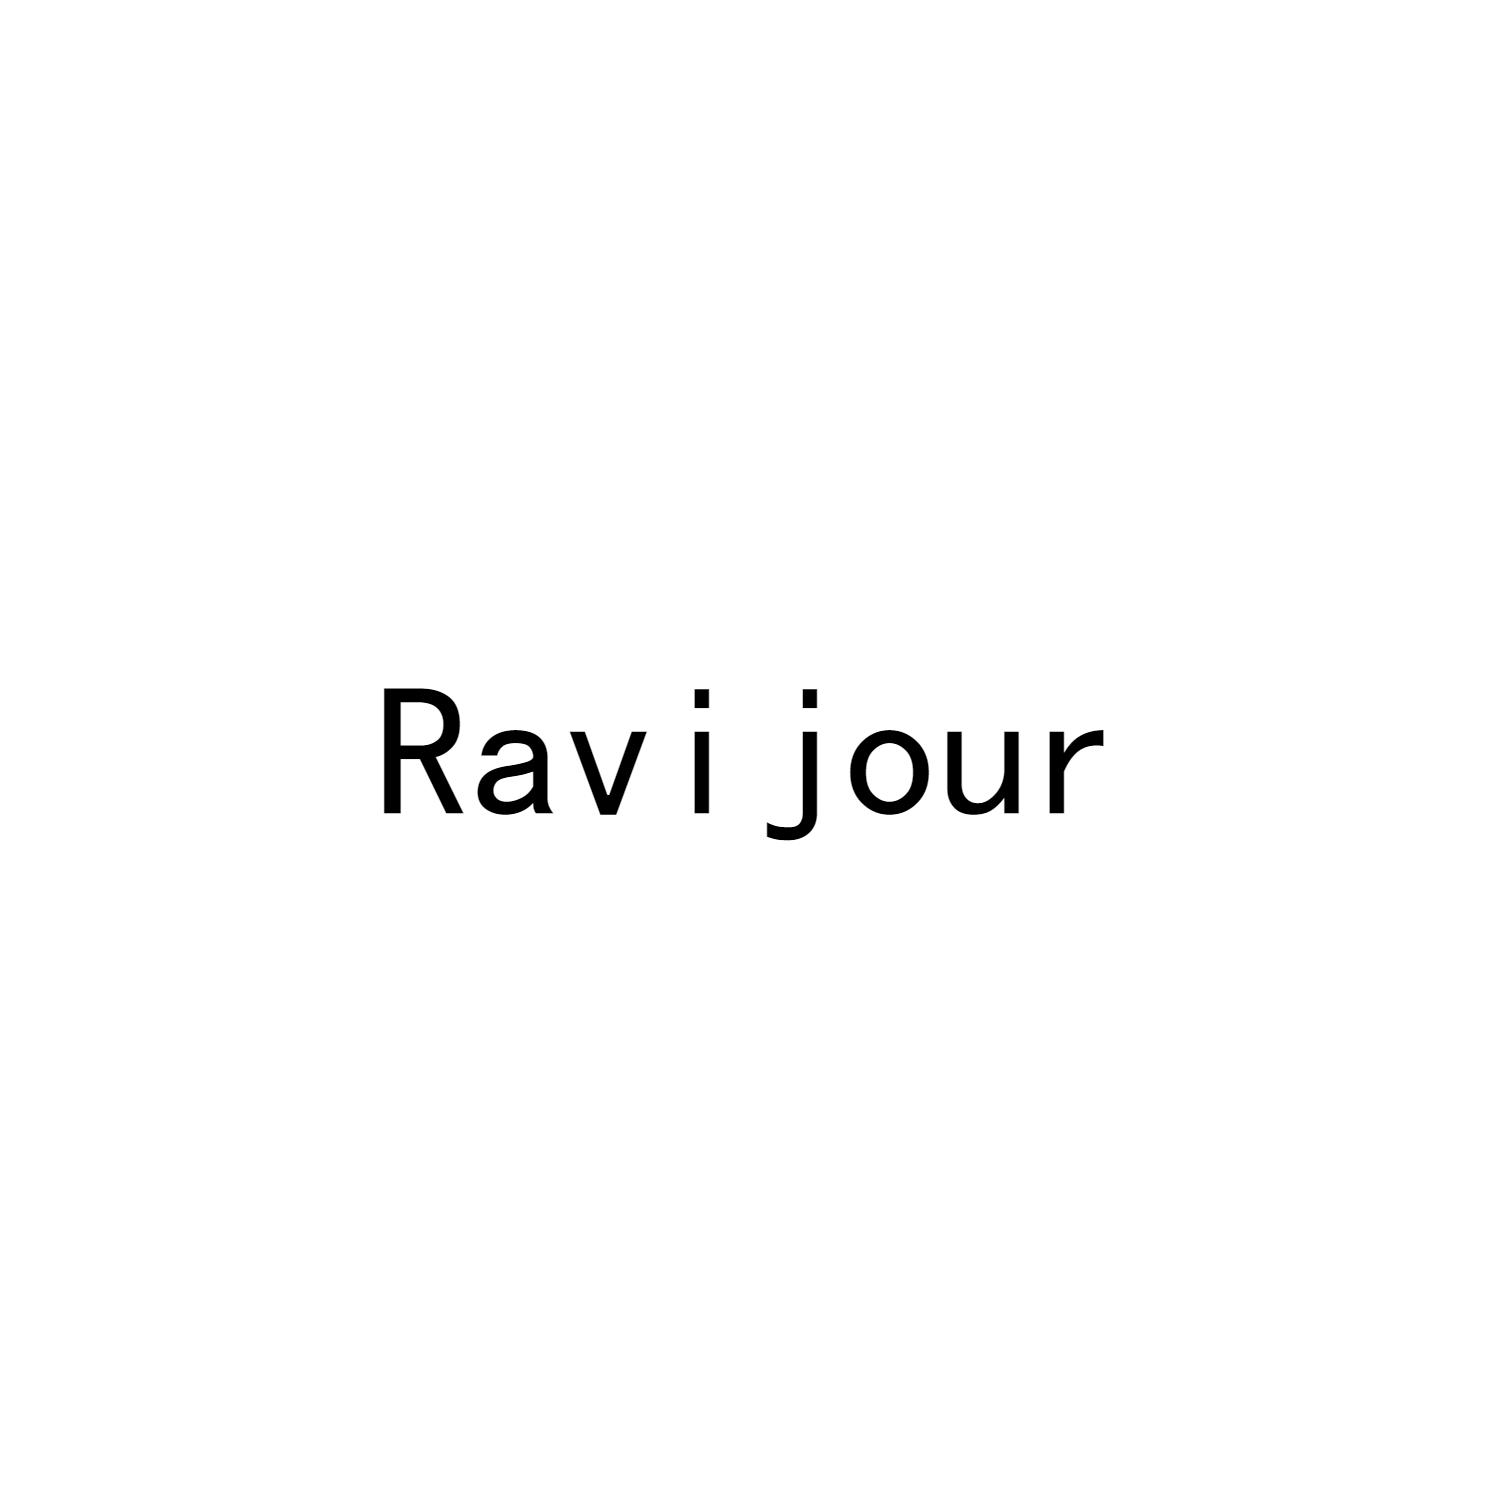 转让商标-RAVI JOUR